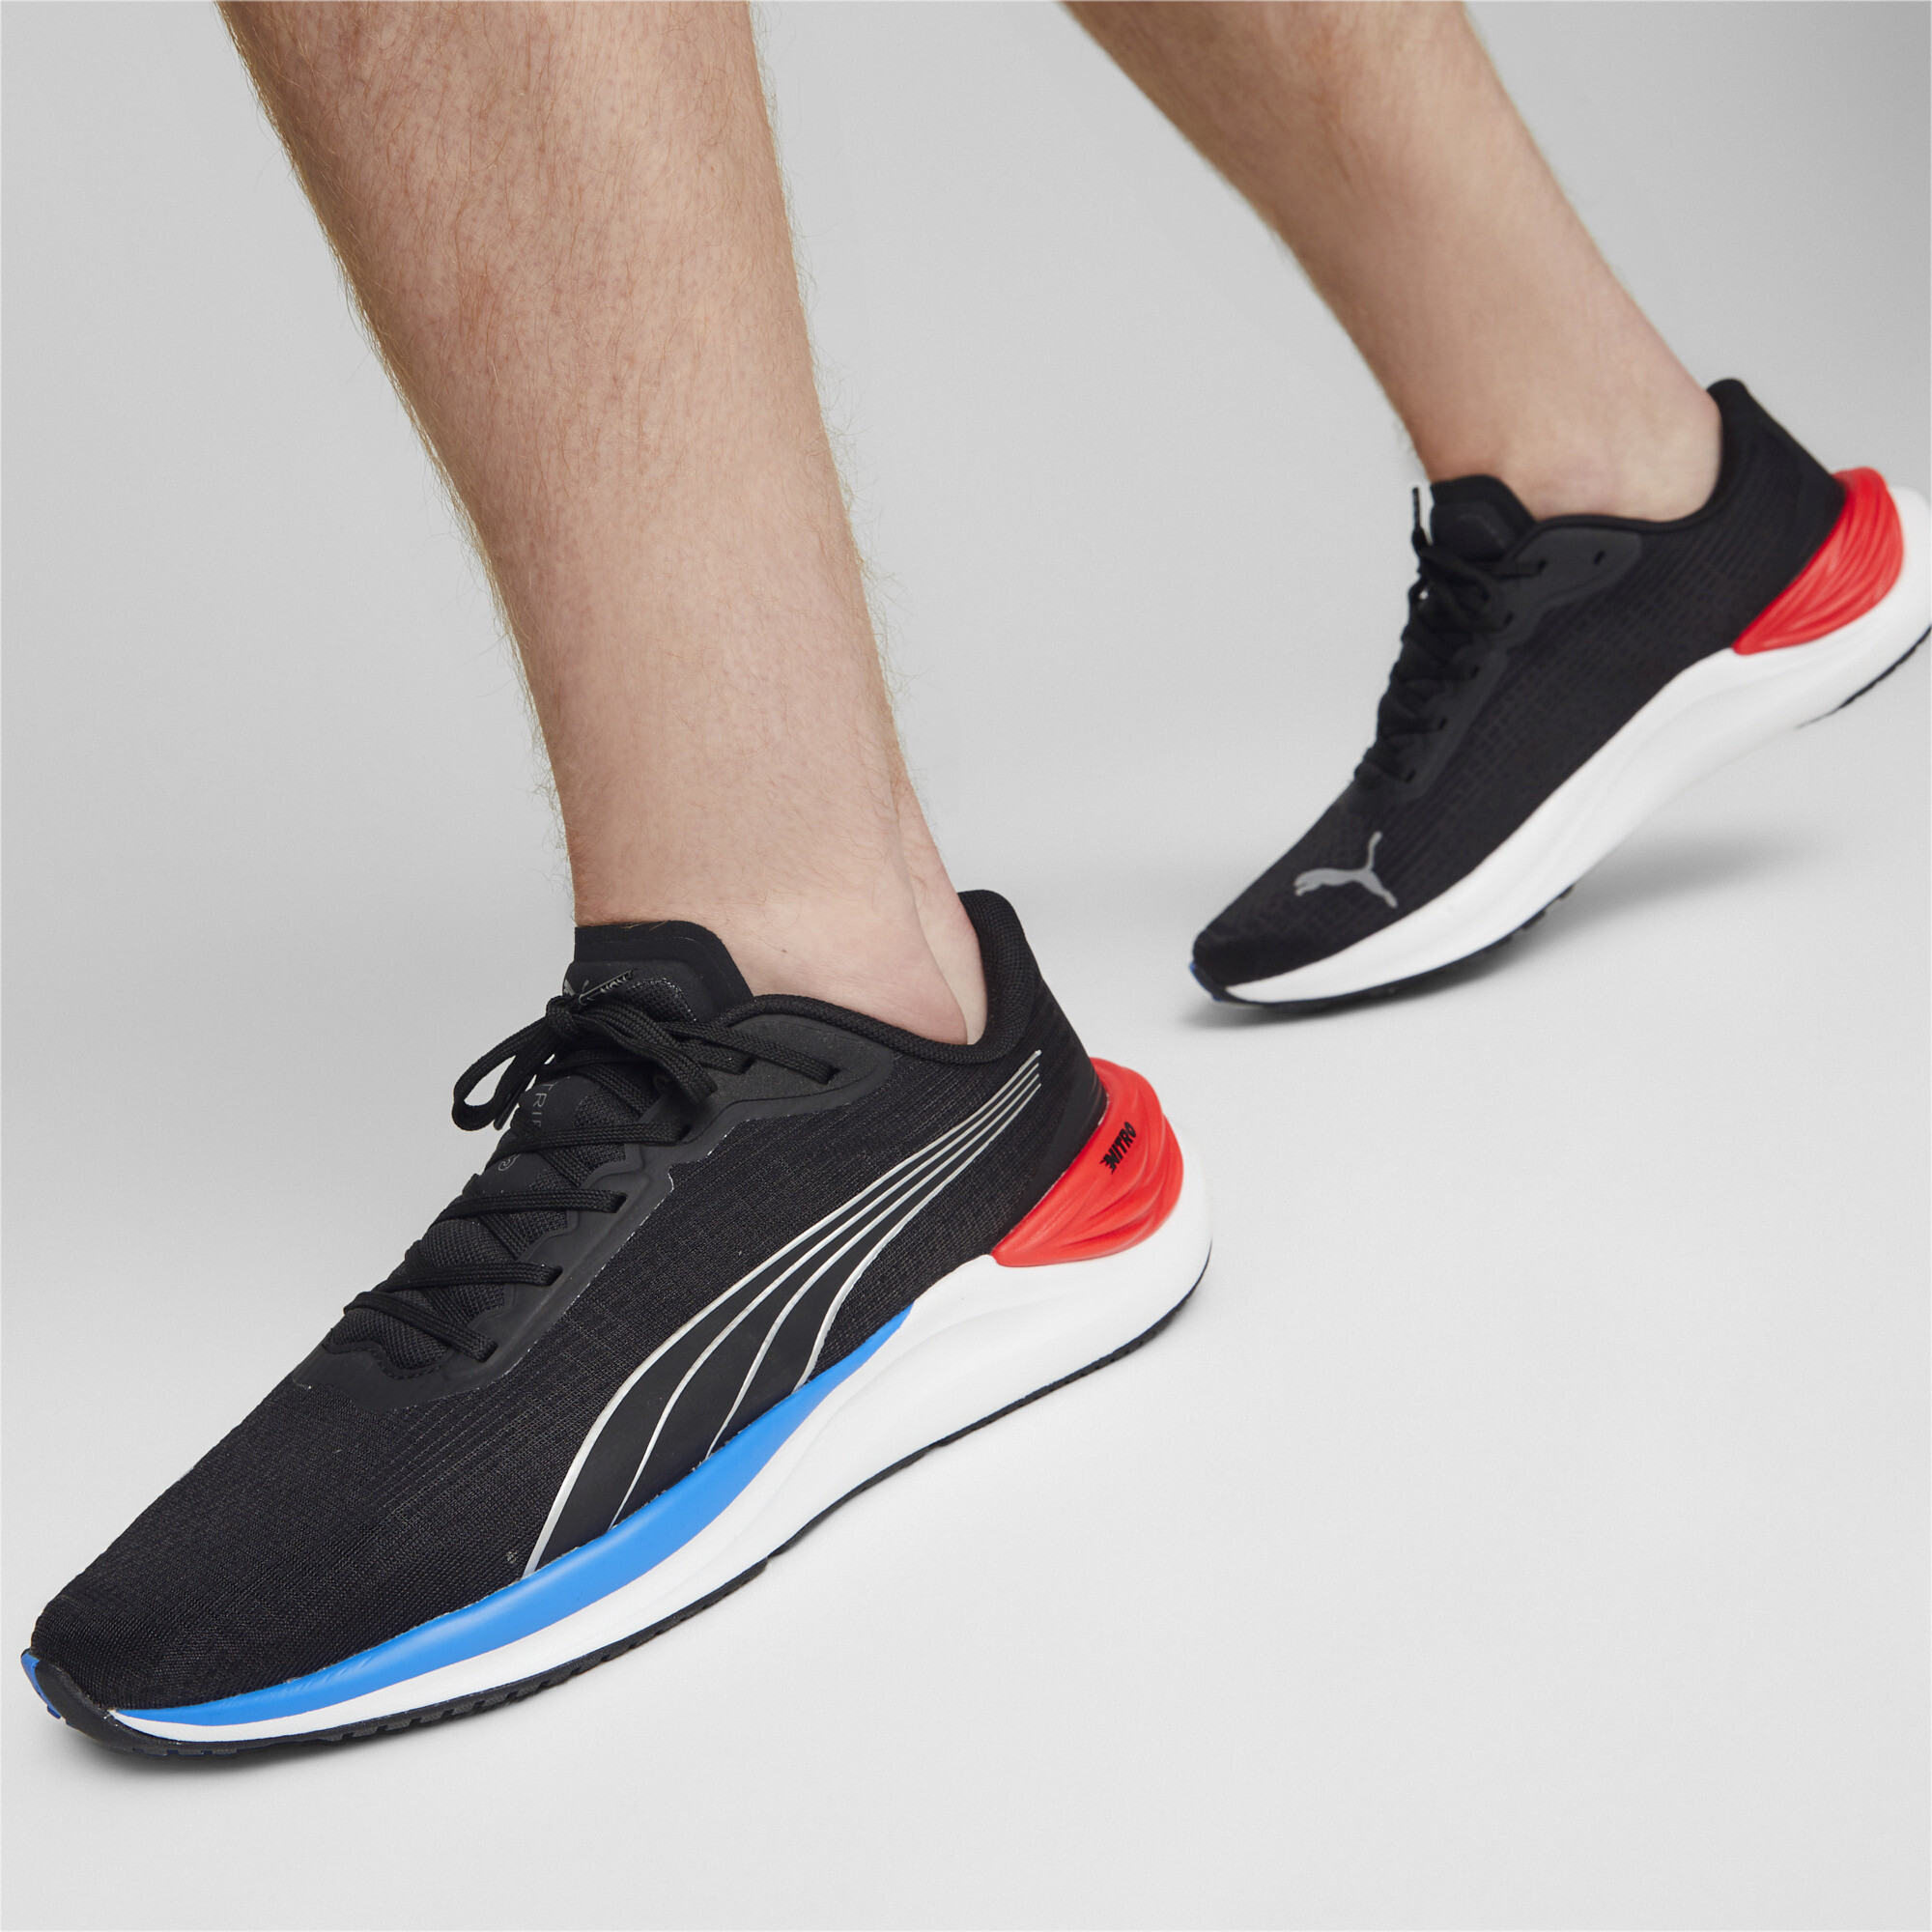 Men's PUMA Electrify NITROâ¢ 3 Running Shoes In Black, Size EU 41